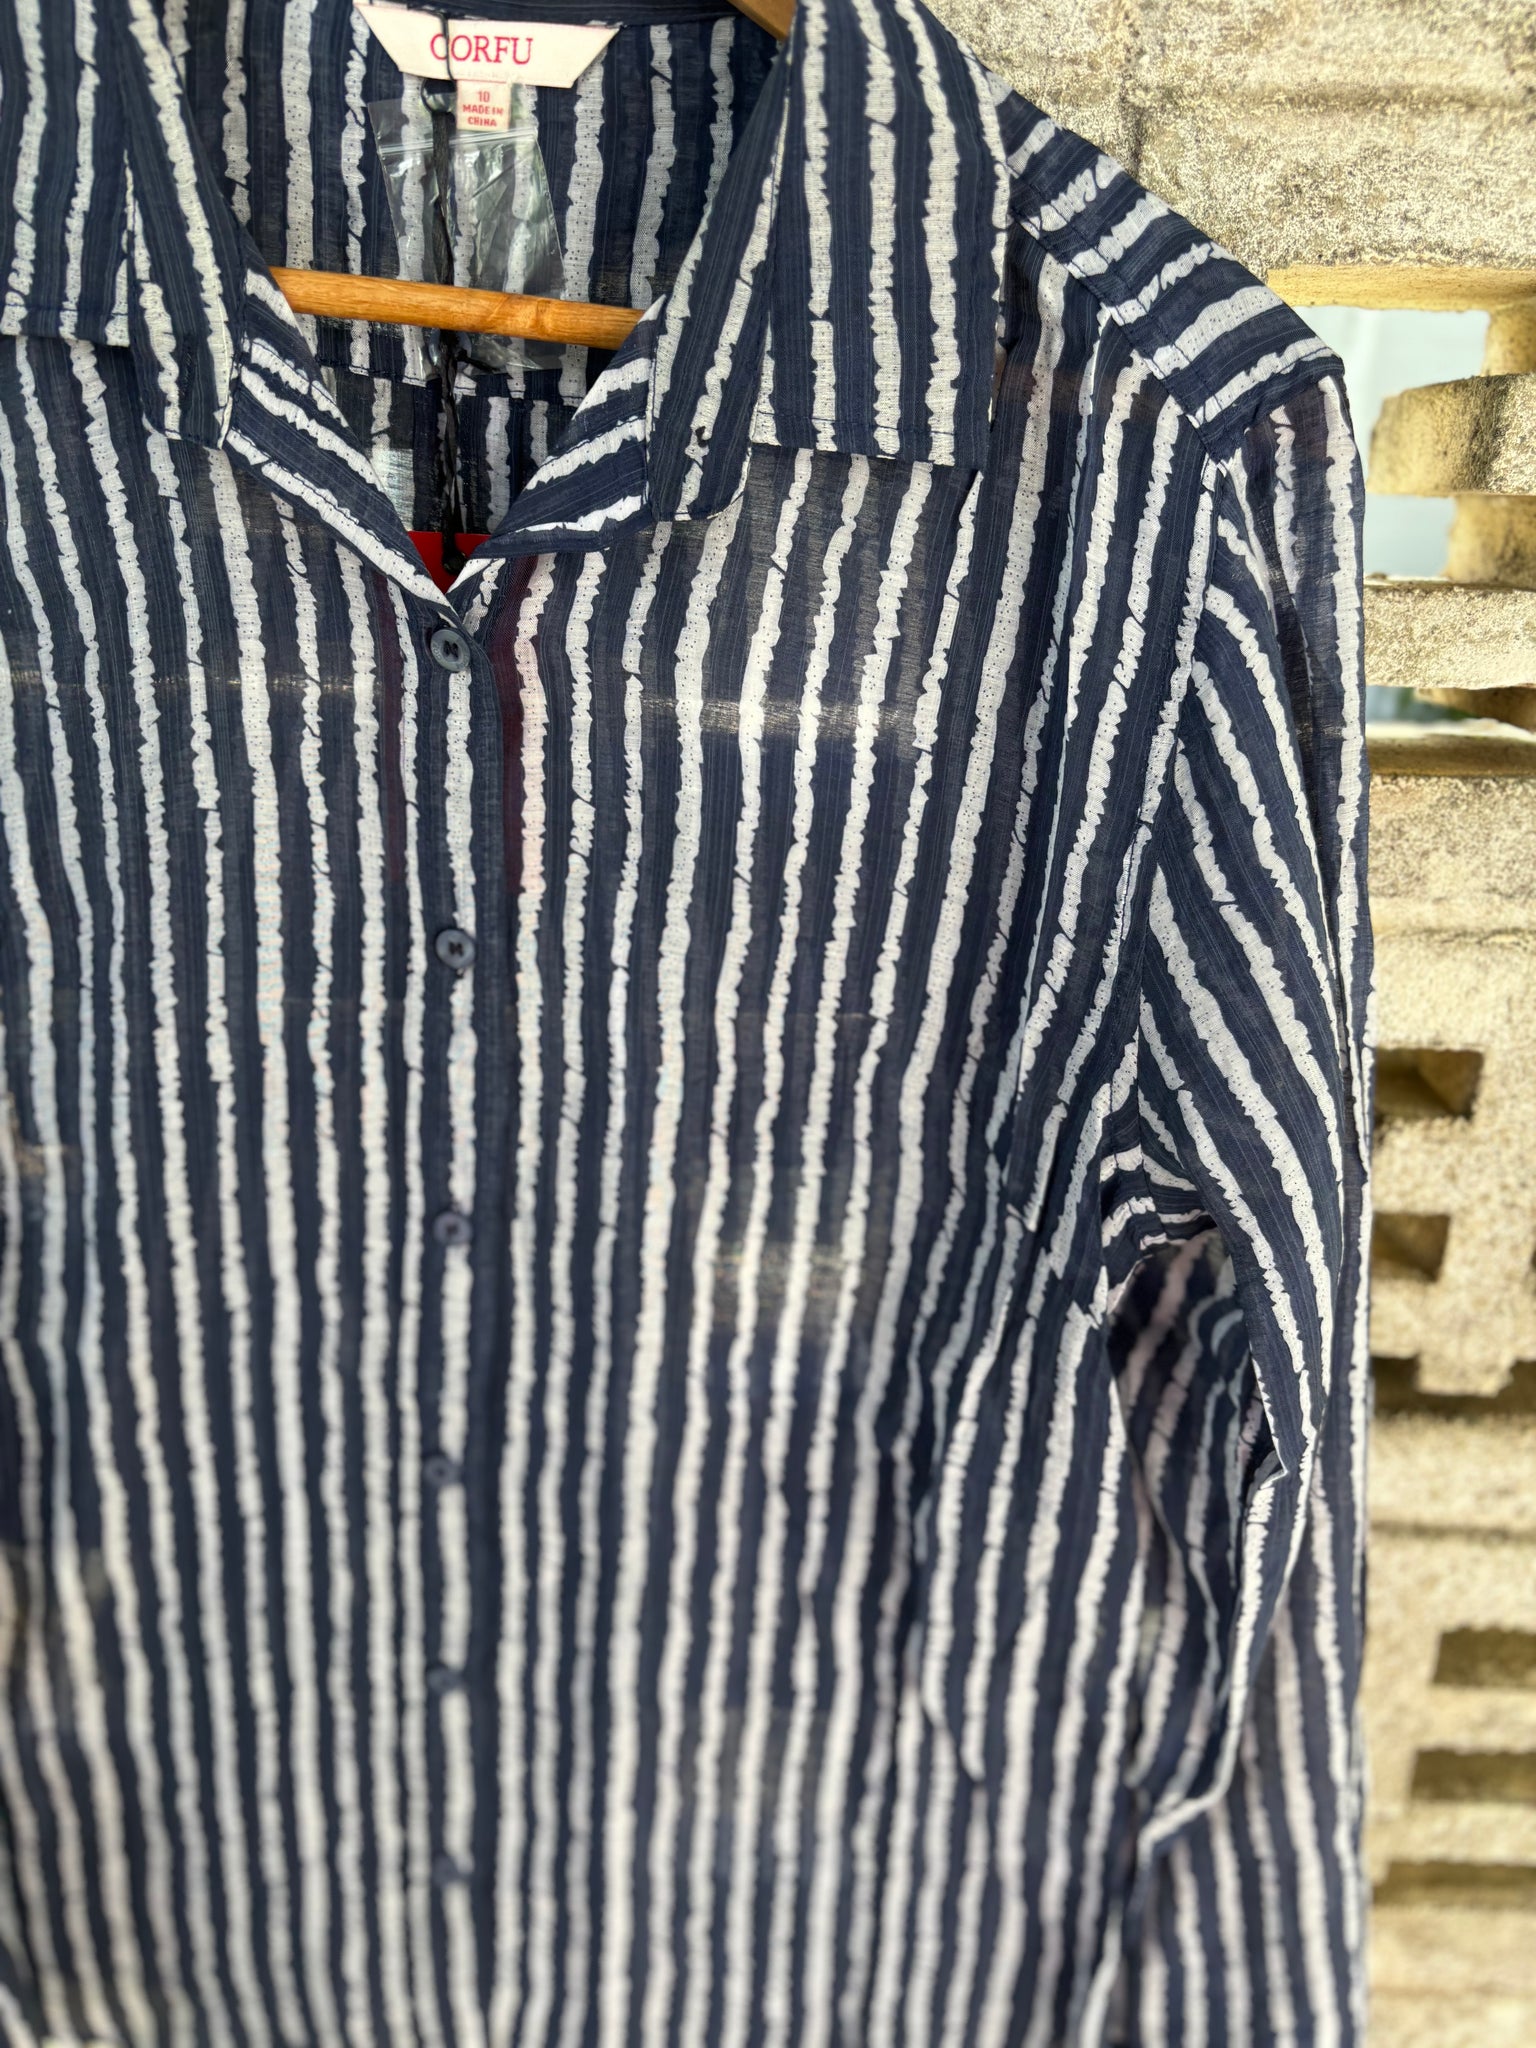 W2426410 Corfu 100% Cotton Print Shirt Navy Stripe